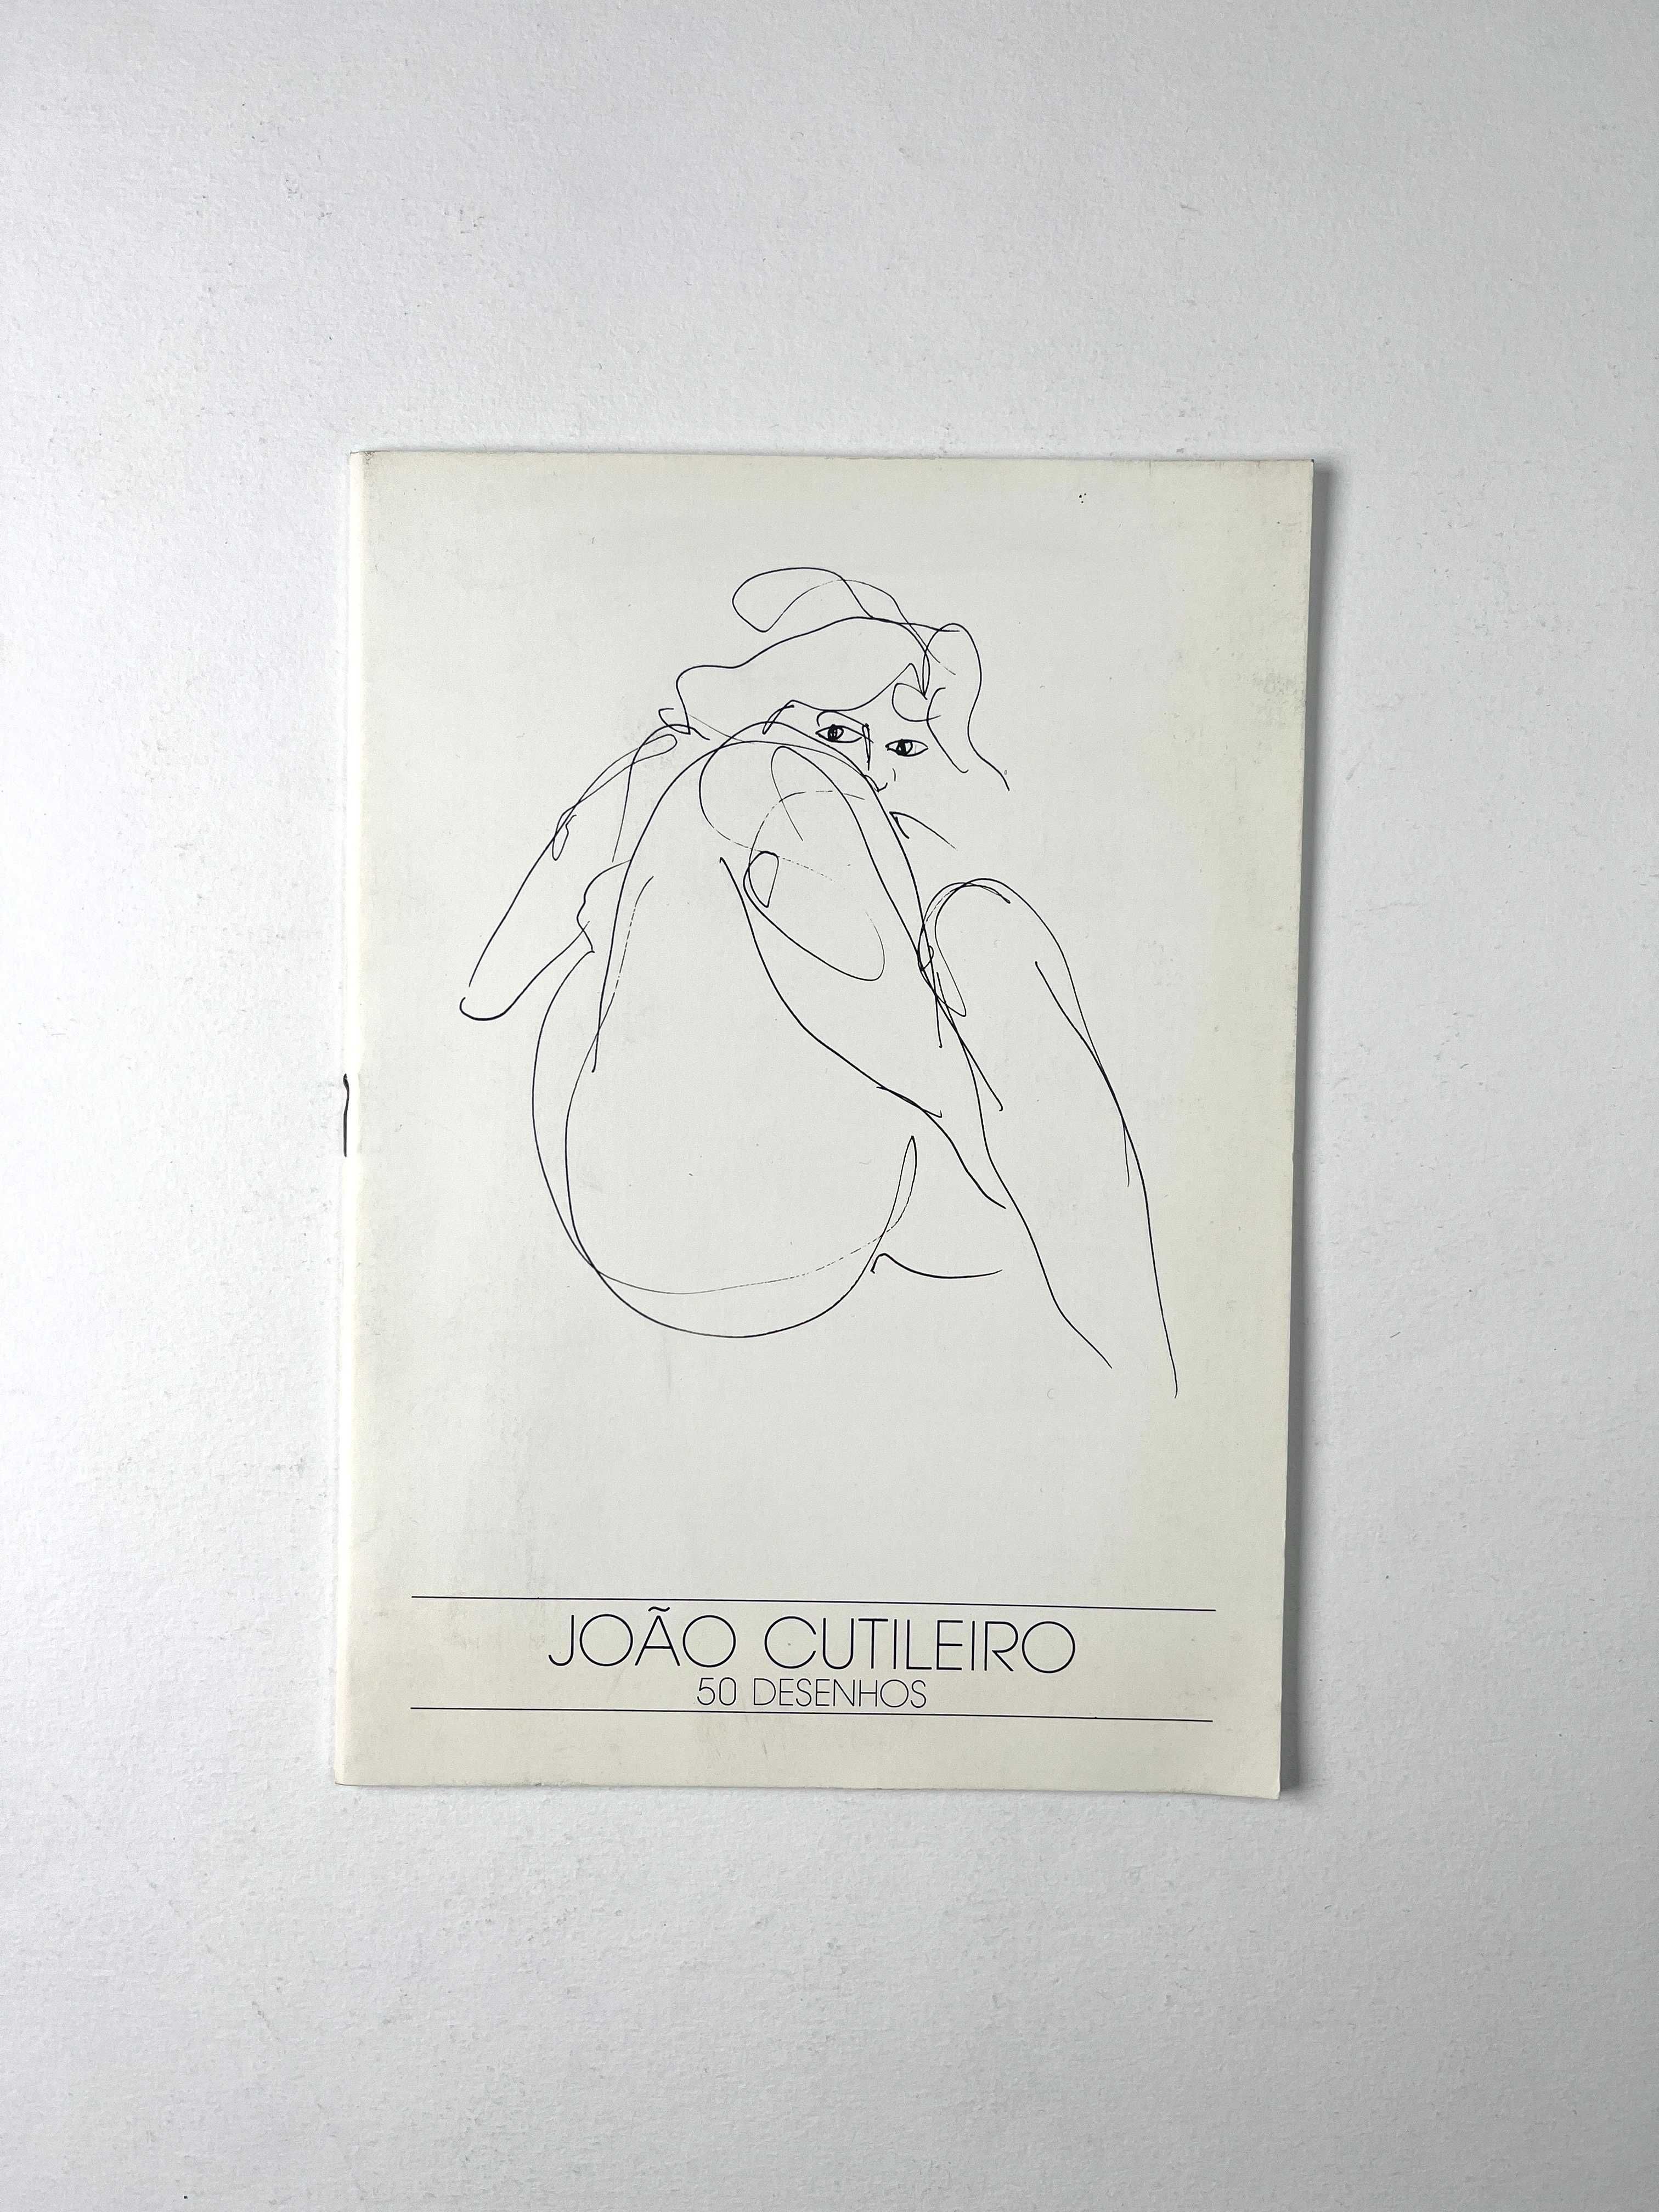 João Cutileiro 50 desenhos Galeria de Arte A5 de 1988 Publicação